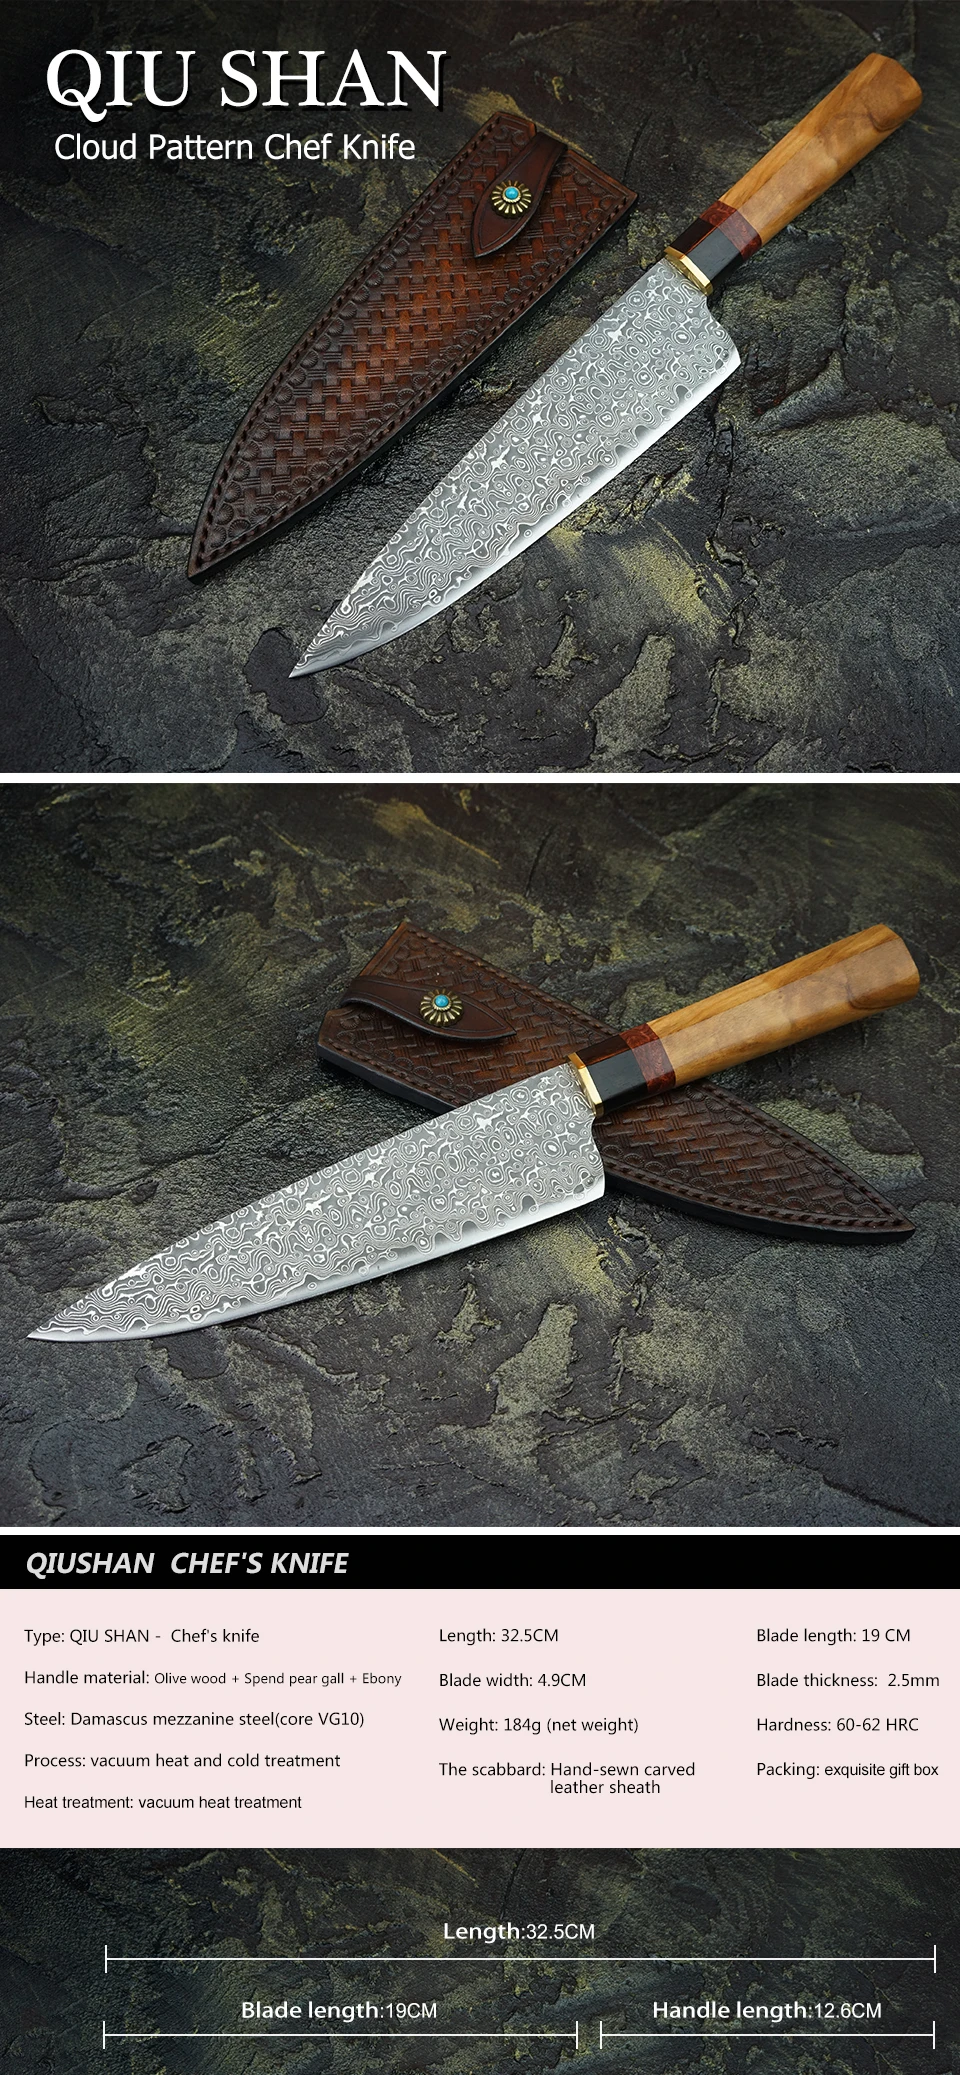 FZIZUO дамасский стальной нож шеф-повара японские ножи Santoku оливковая деревянная ручка кухонные инструменты для приготовления пищи с кожаной оболочкой ручной работы